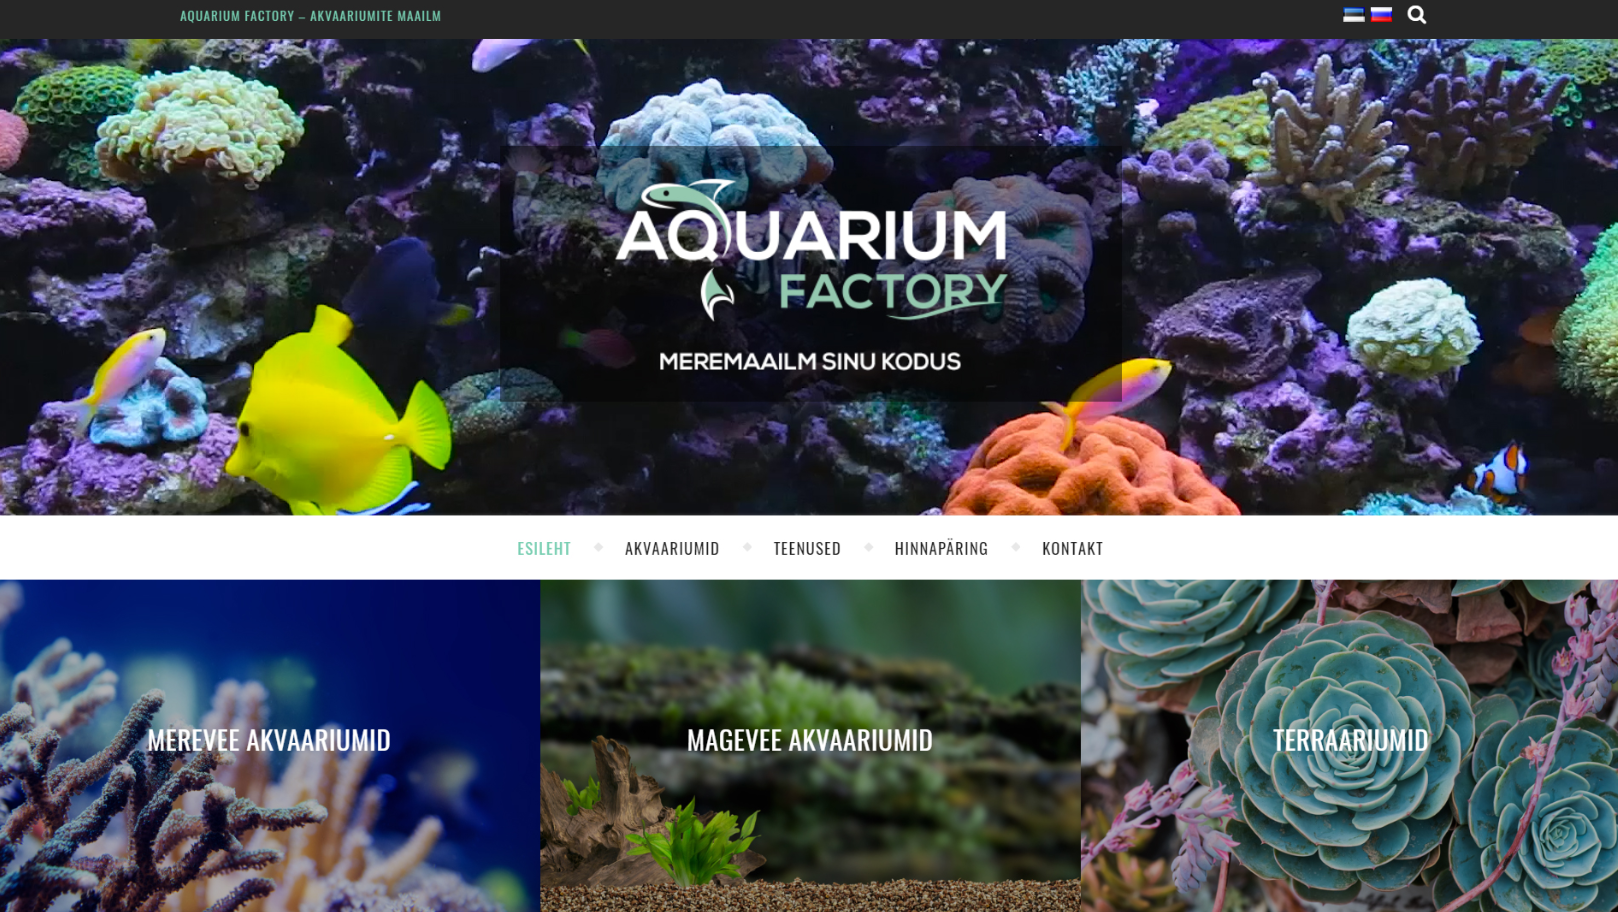 You are currently viewing AquariumFactory koduleht